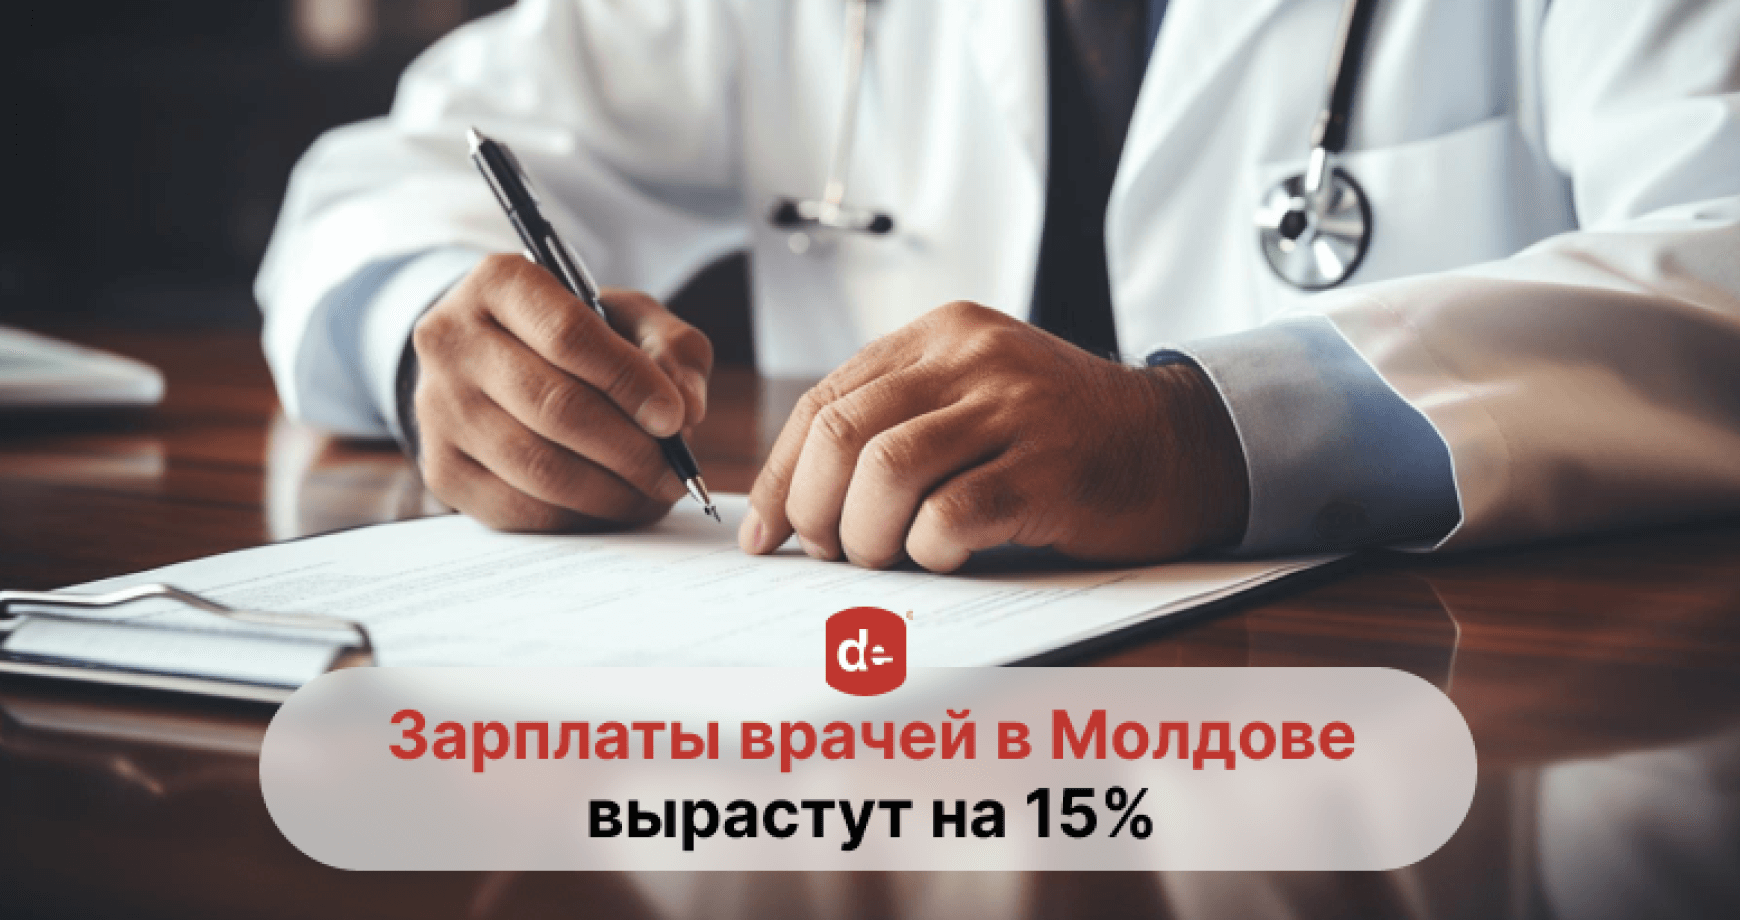 Зарплаты врачей в Молдове вырастут на 15%